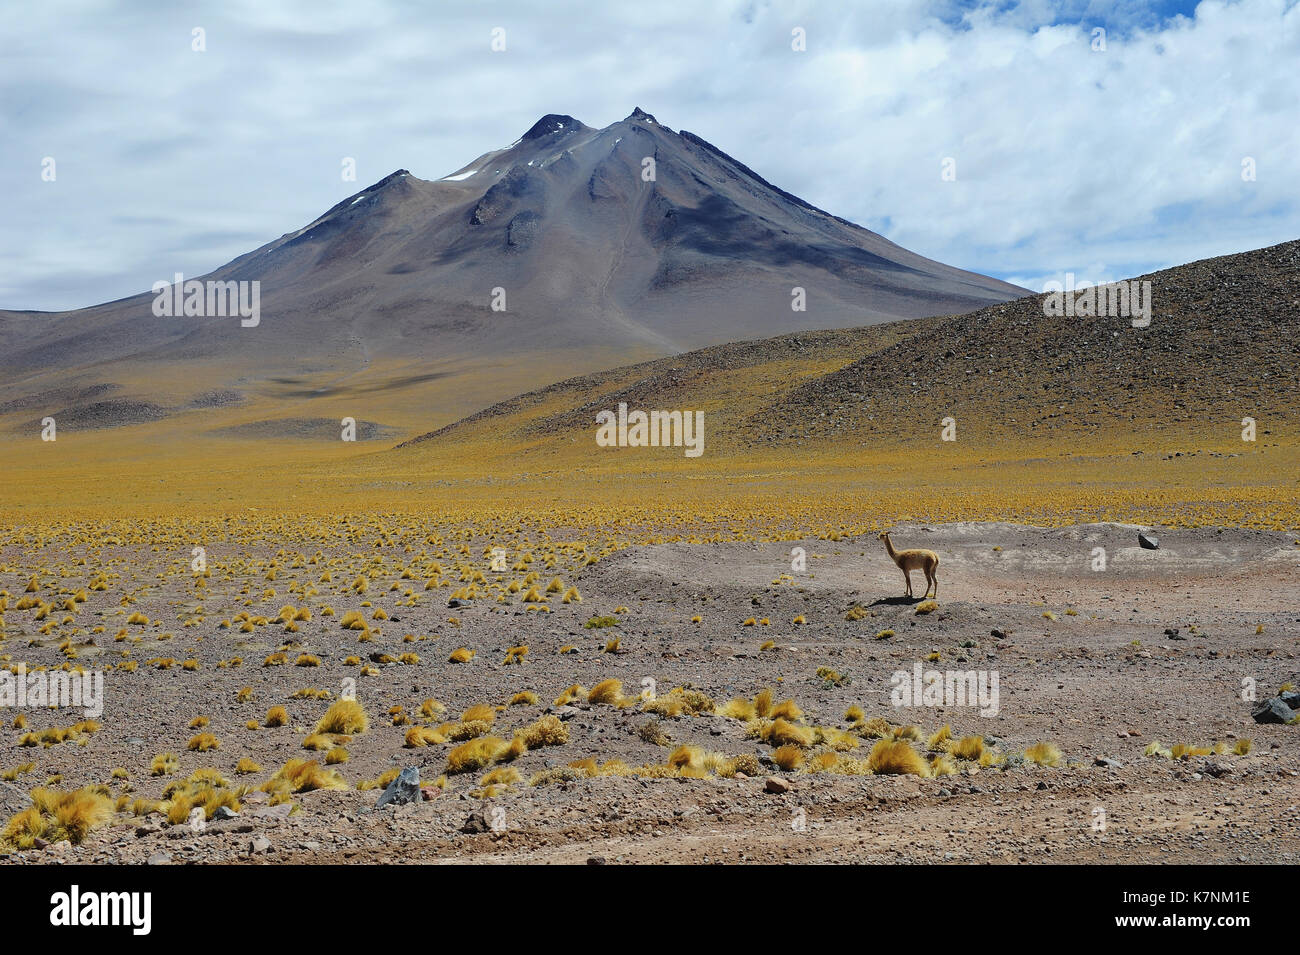 A vicuña in the Atacama desert, Chile Stock Photo